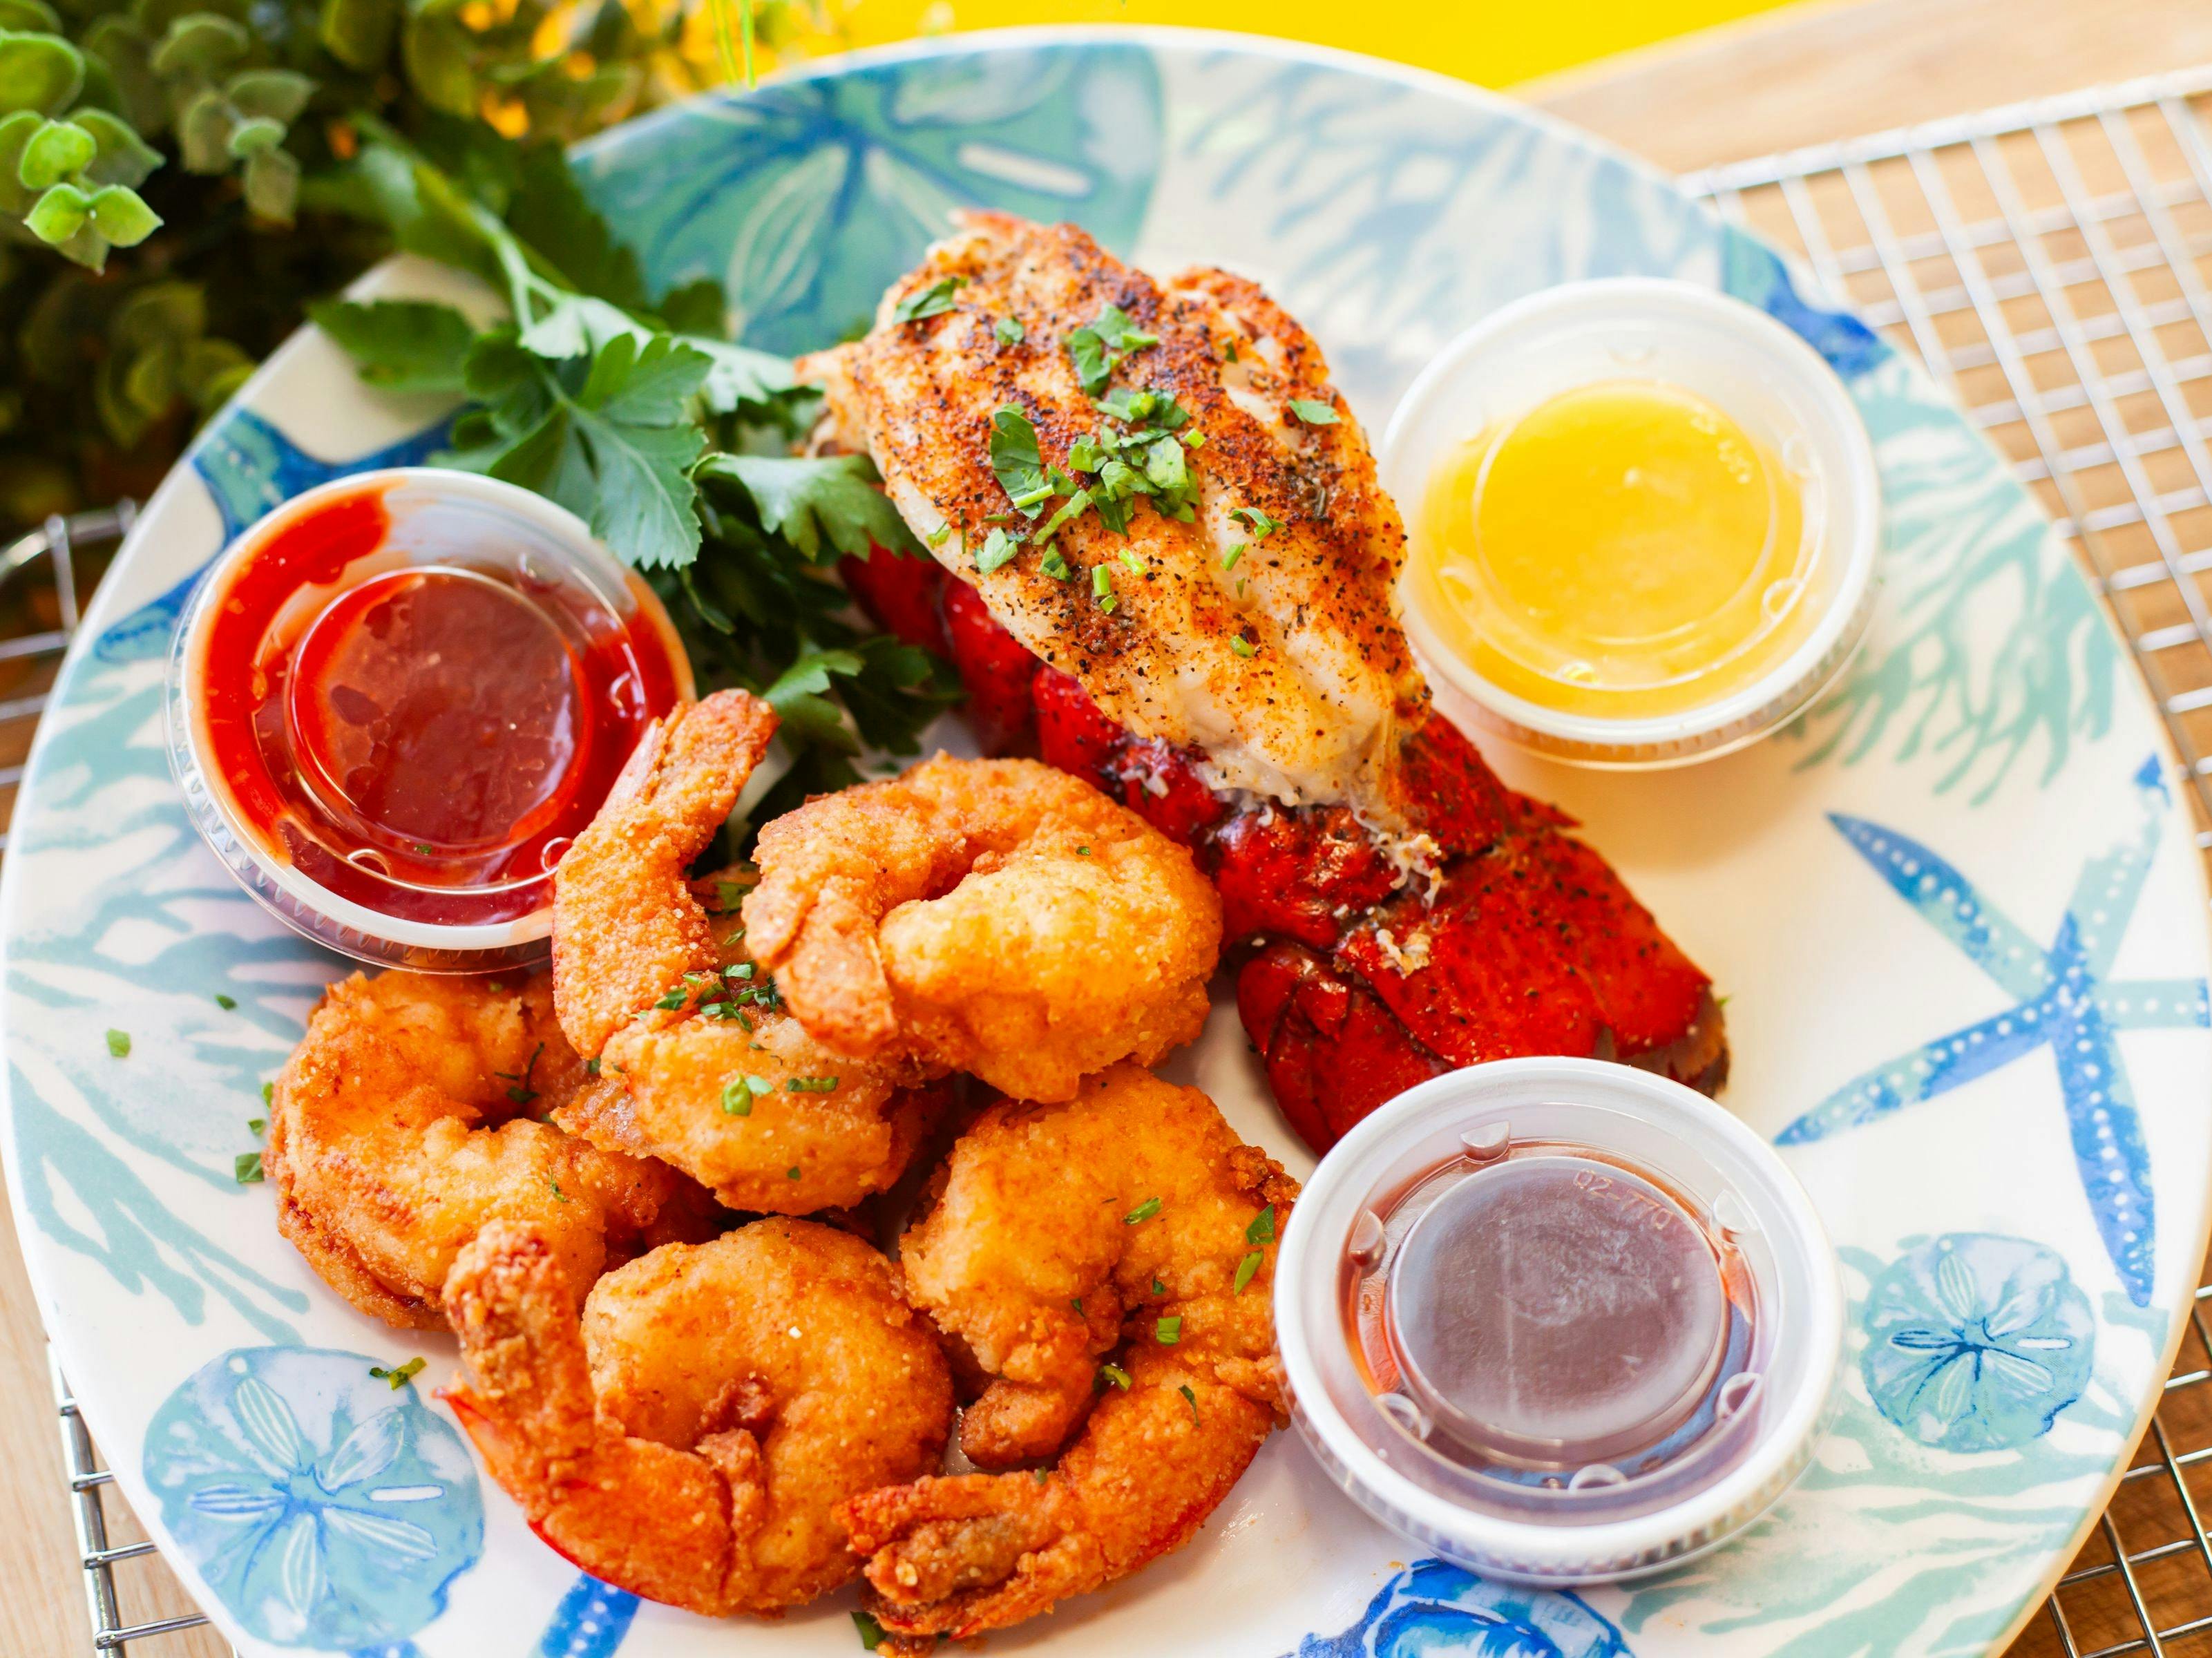 Photo of 'Lobster N Shrimp' meal.